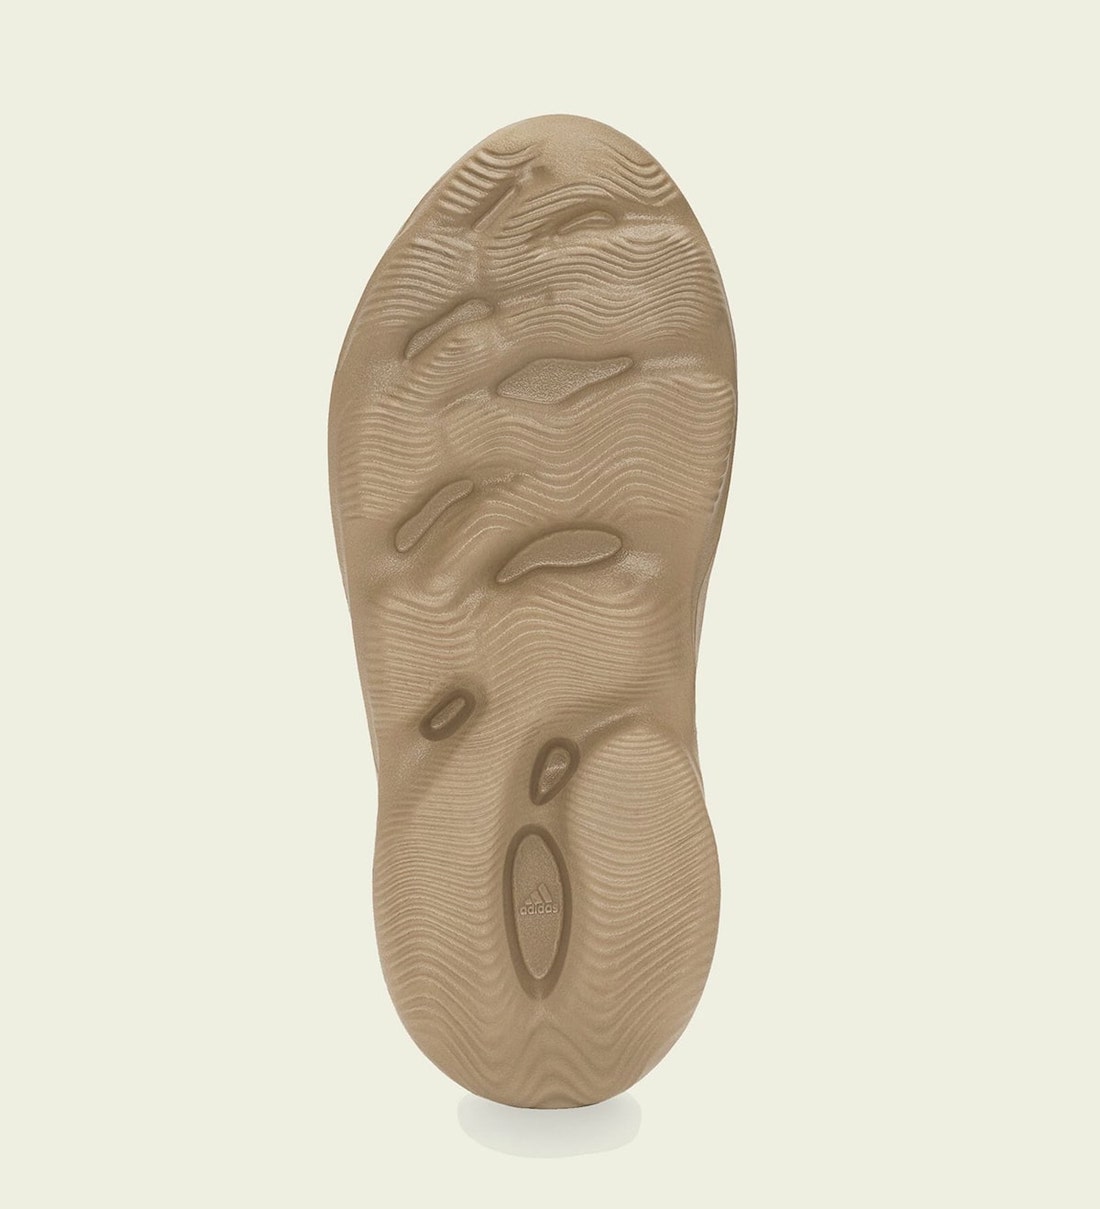 adidas Yeezy Foam Runner Ochre GW3354 Release Date Price 4